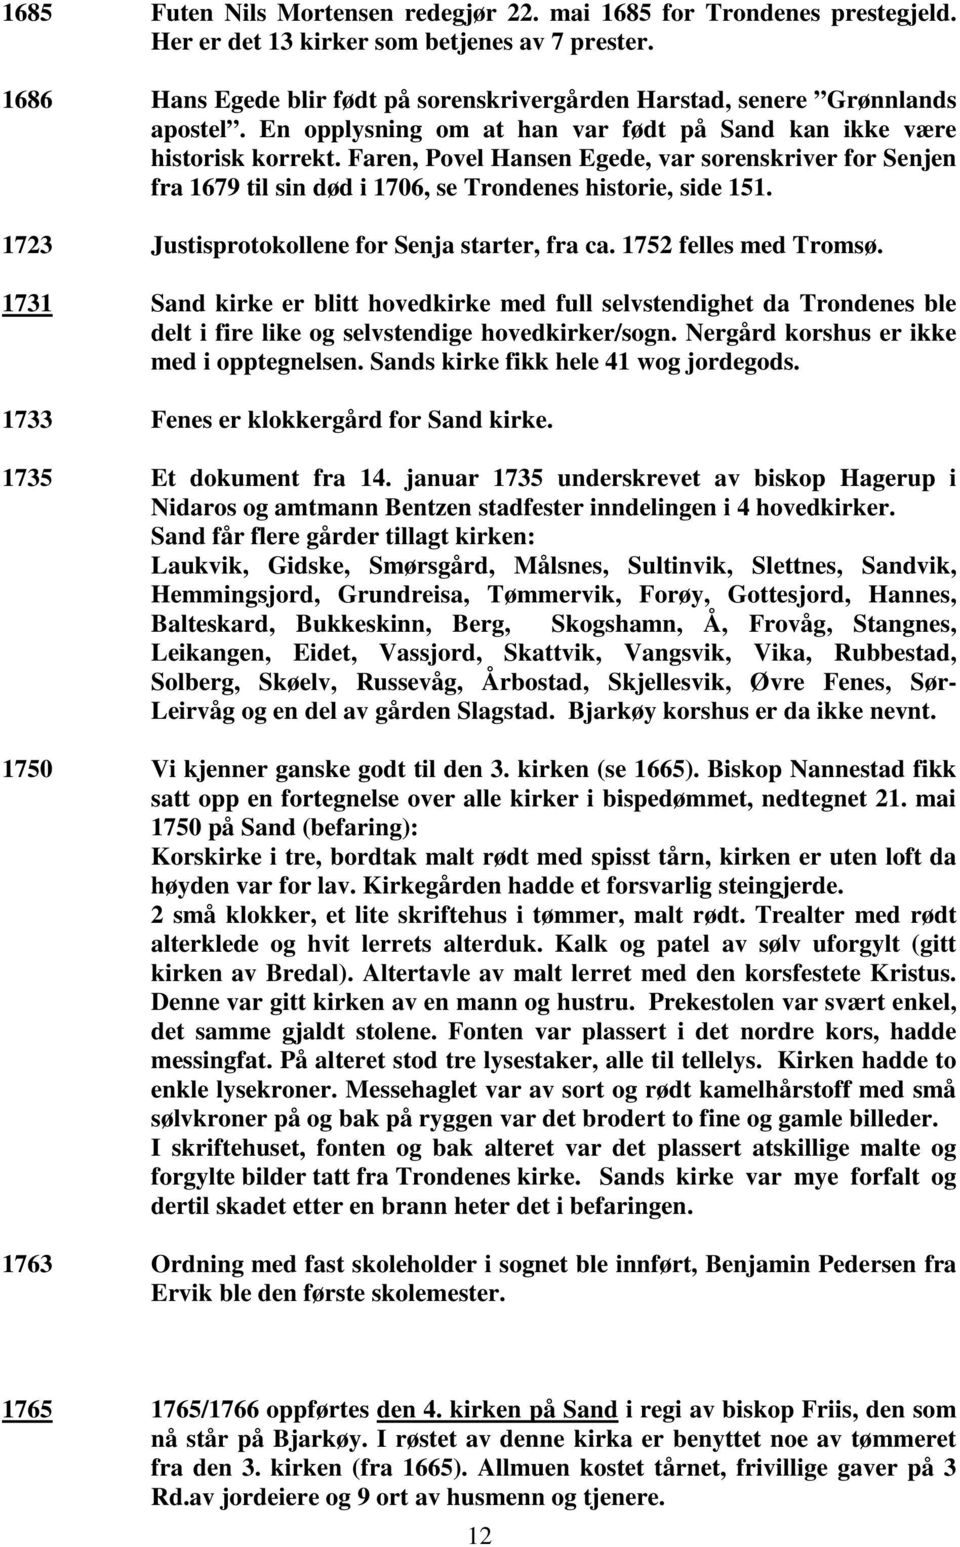 Faren, Povel Hansen Egede, var sorenskriver for Senjen fra 1679 til sin død i 1706, se Trondenes historie, side 151. 1723 Justisprotokollene for Senja starter, fra ca. 1752 felles med Tromsø.